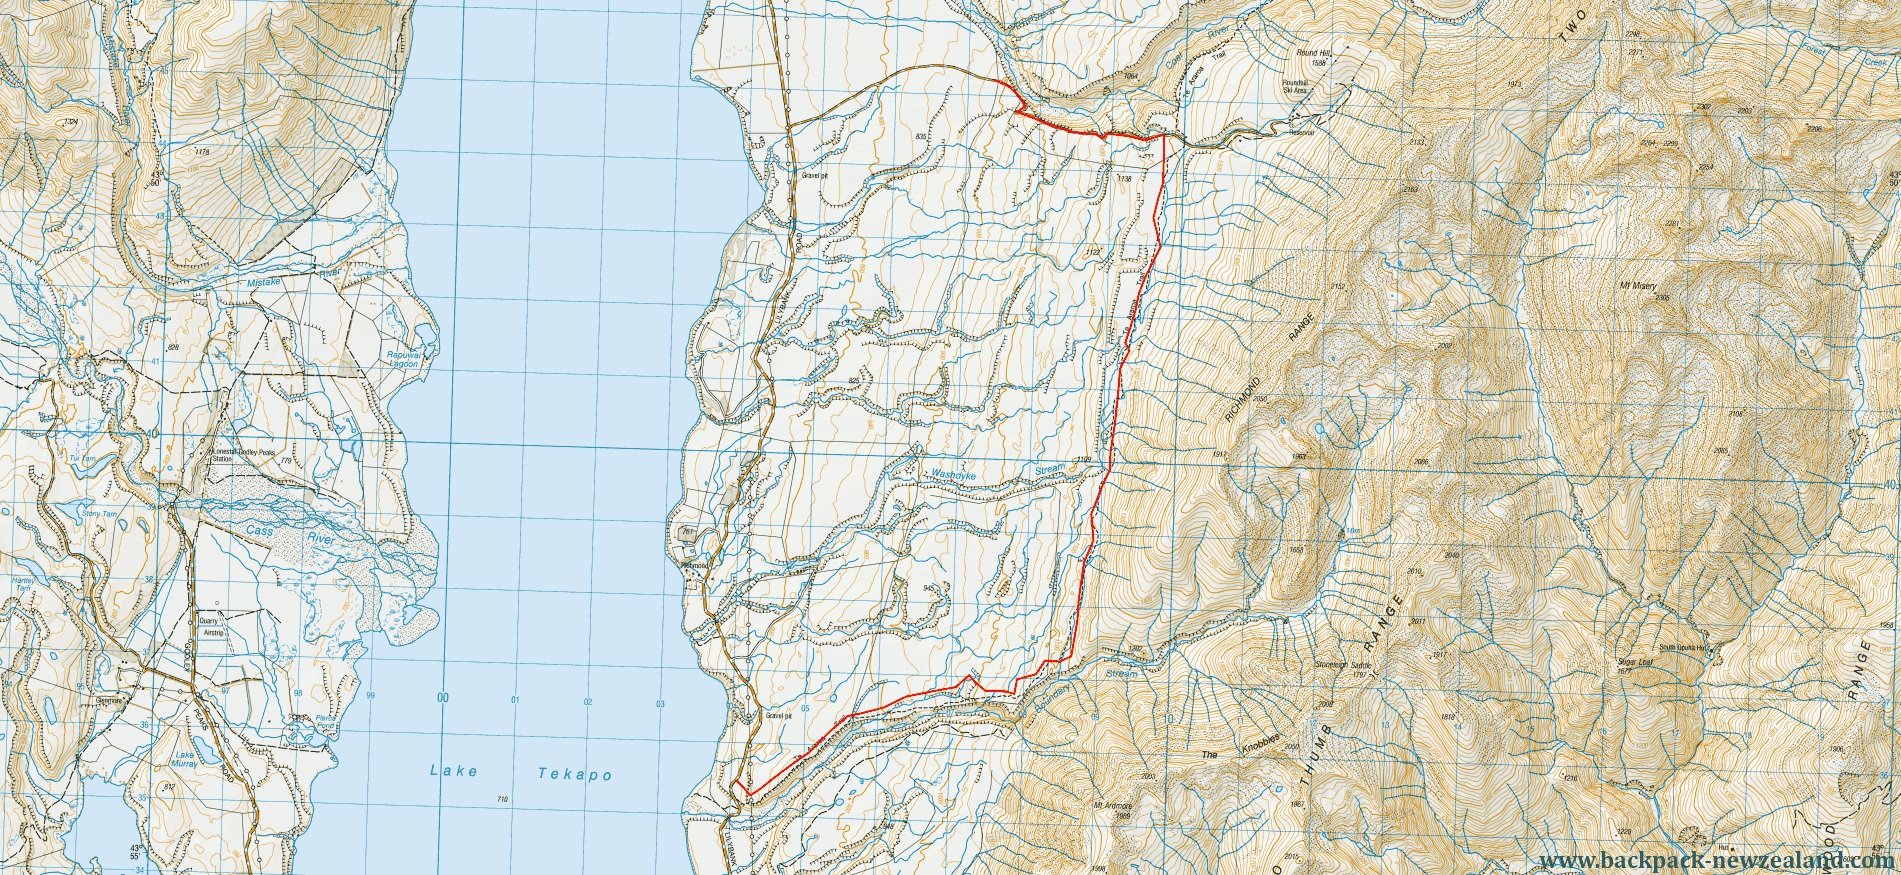 Richmond Trail Tat Map - New Zealand Tracks